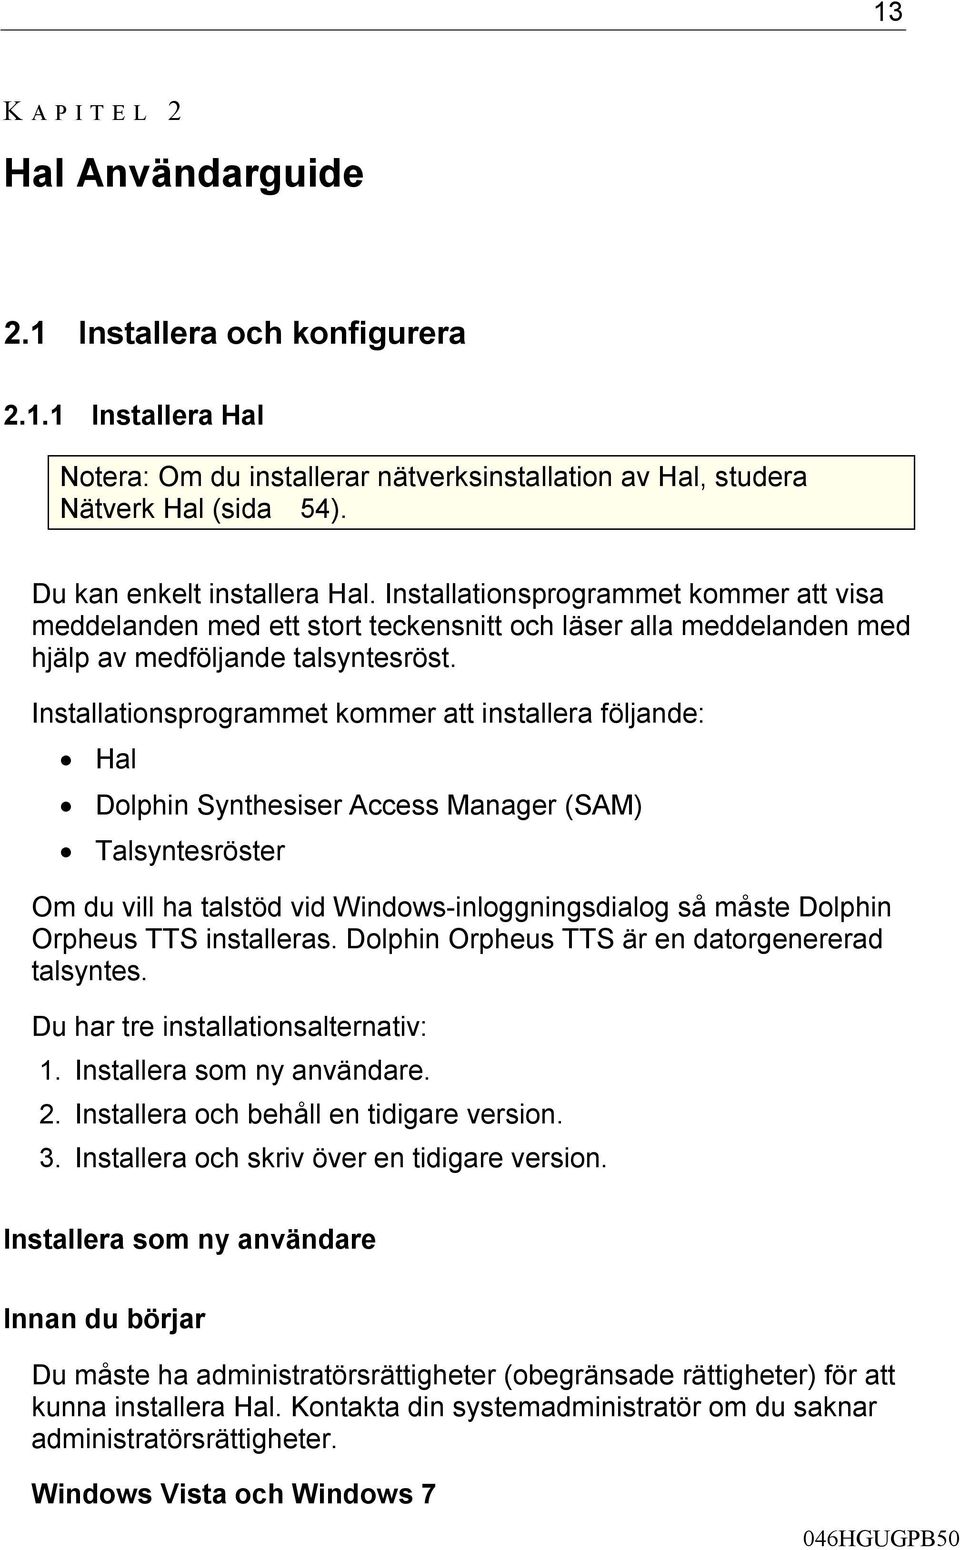 Installationsprogrammet kommer att installera följande: Hal Dolphin Synthesiser Access Manager (SAM) Talsyntesröster Om du vill ha talstöd vid Windows-inloggningsdialog så måste Dolphin Orpheus TTS